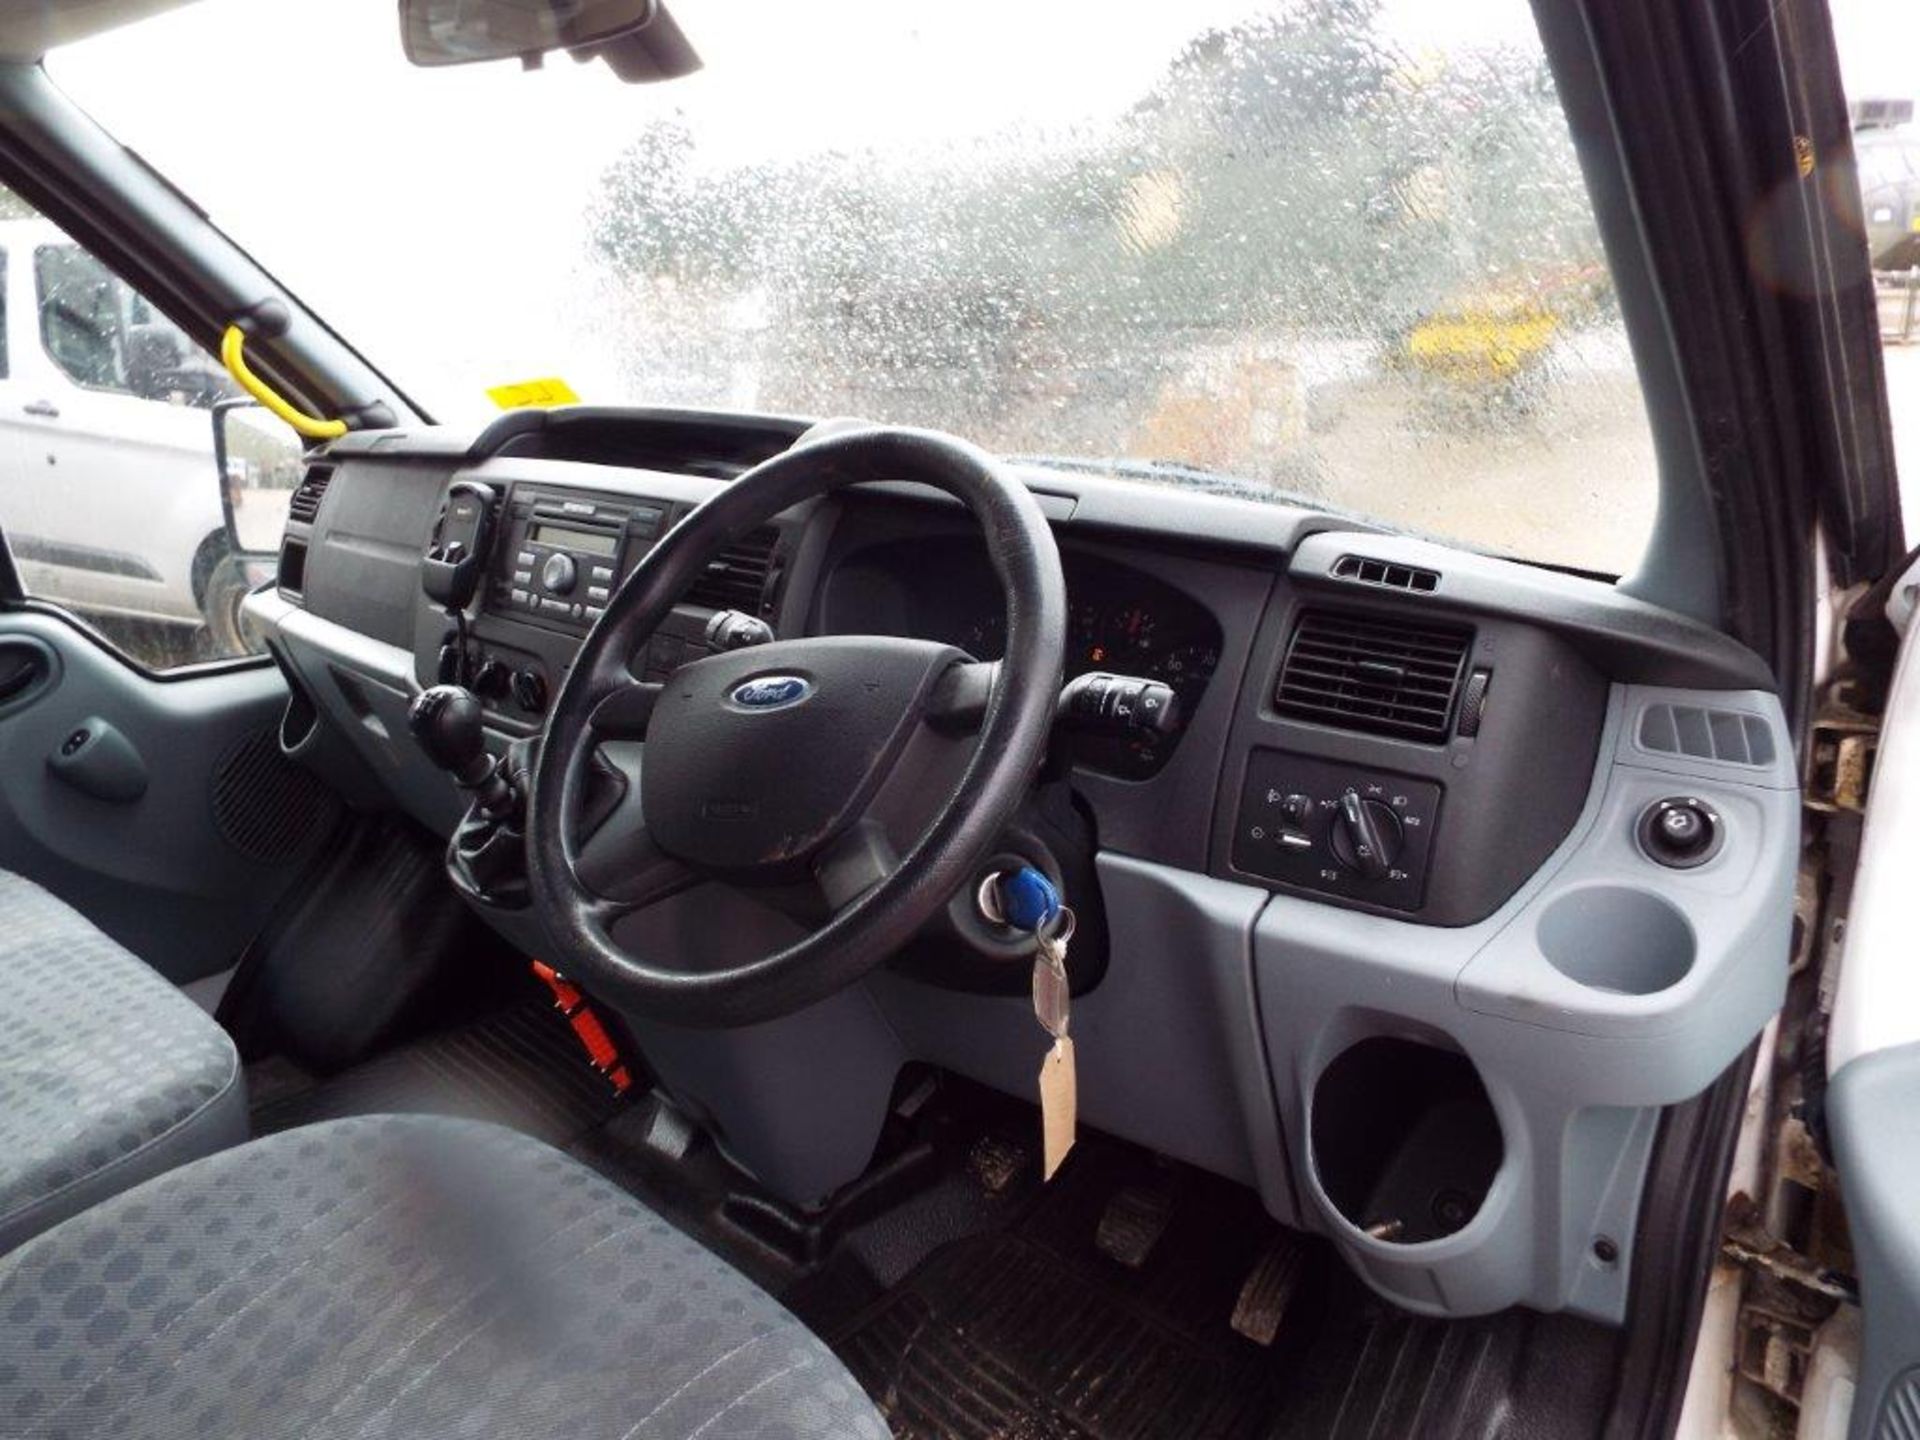 Ford Transit 15 Seat Minibus - Image 11 of 23